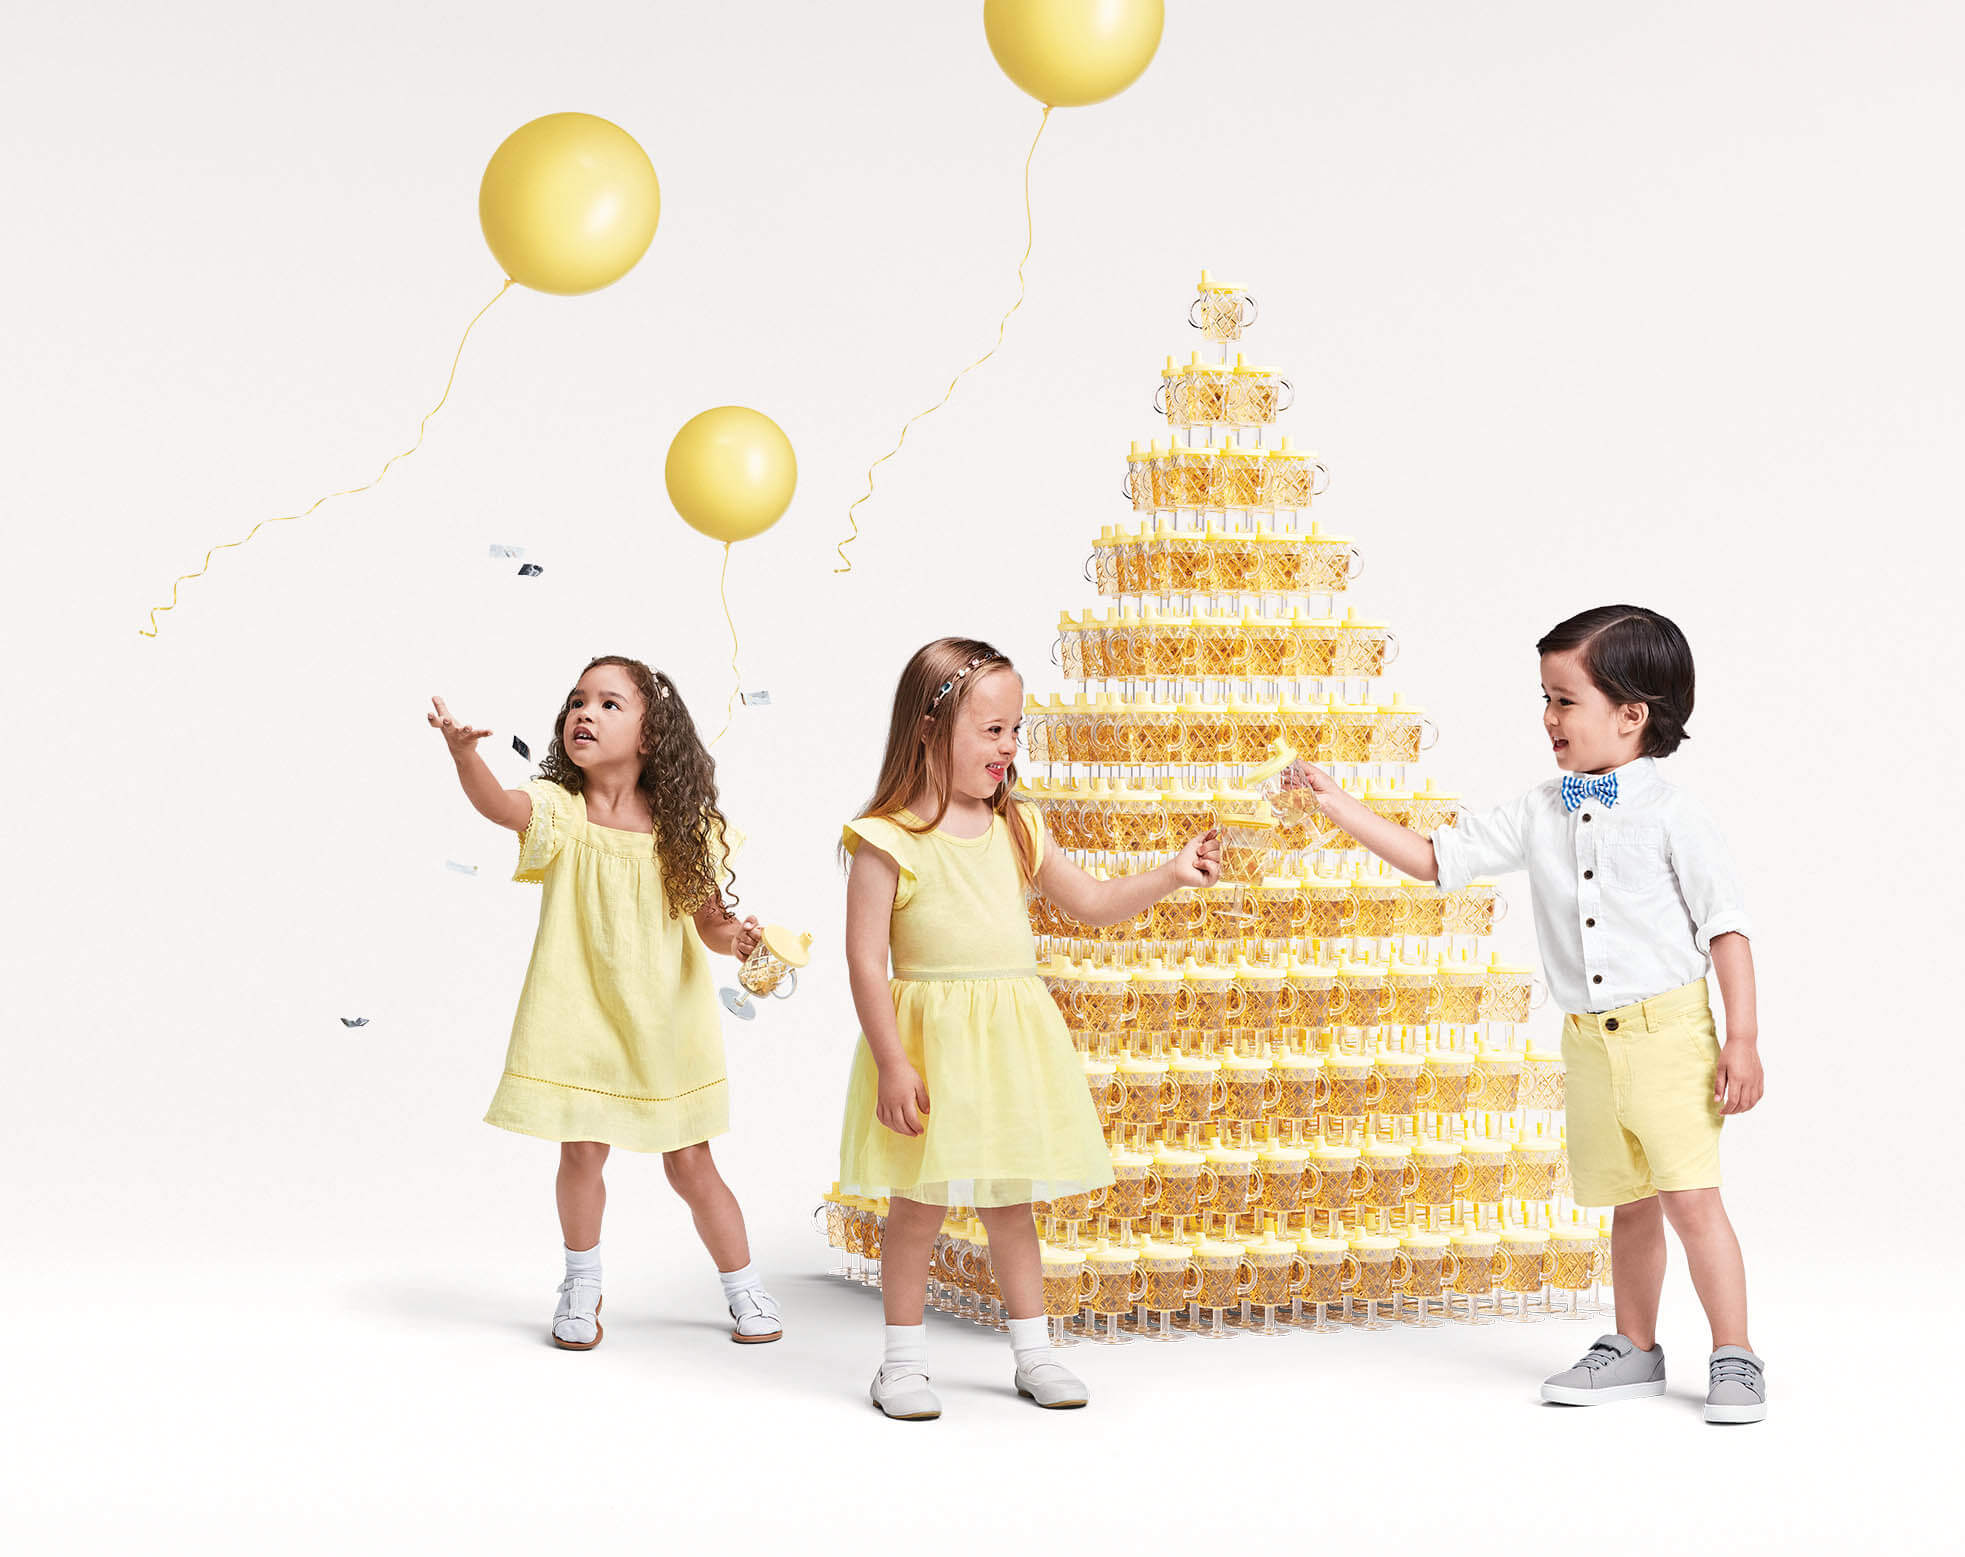 Starck célèbre le #designforall pour le 20eme anniversaire de sa collaboration avec Target